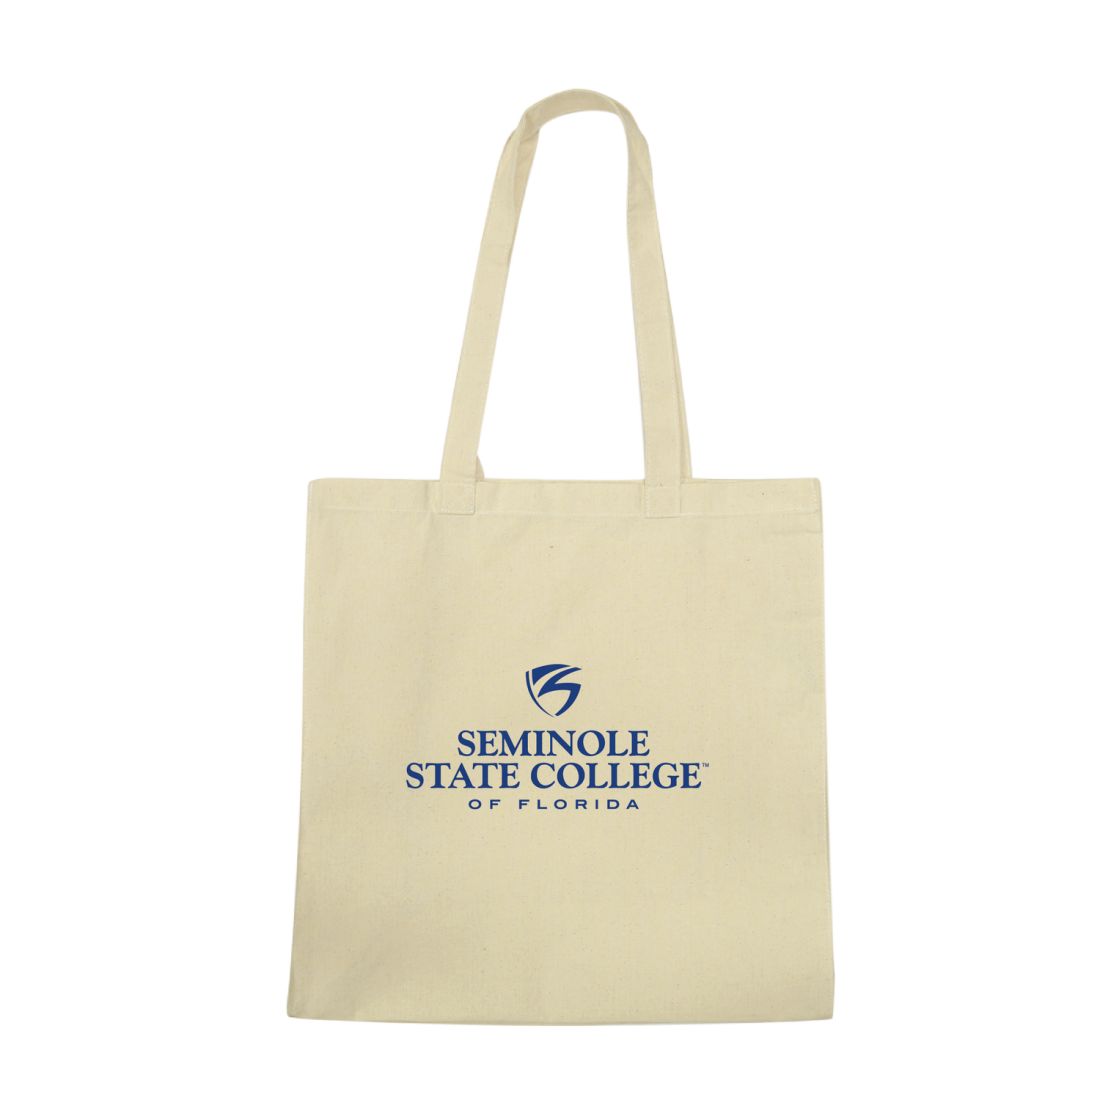 Seminole State College Raiders Institutional Tote Bag